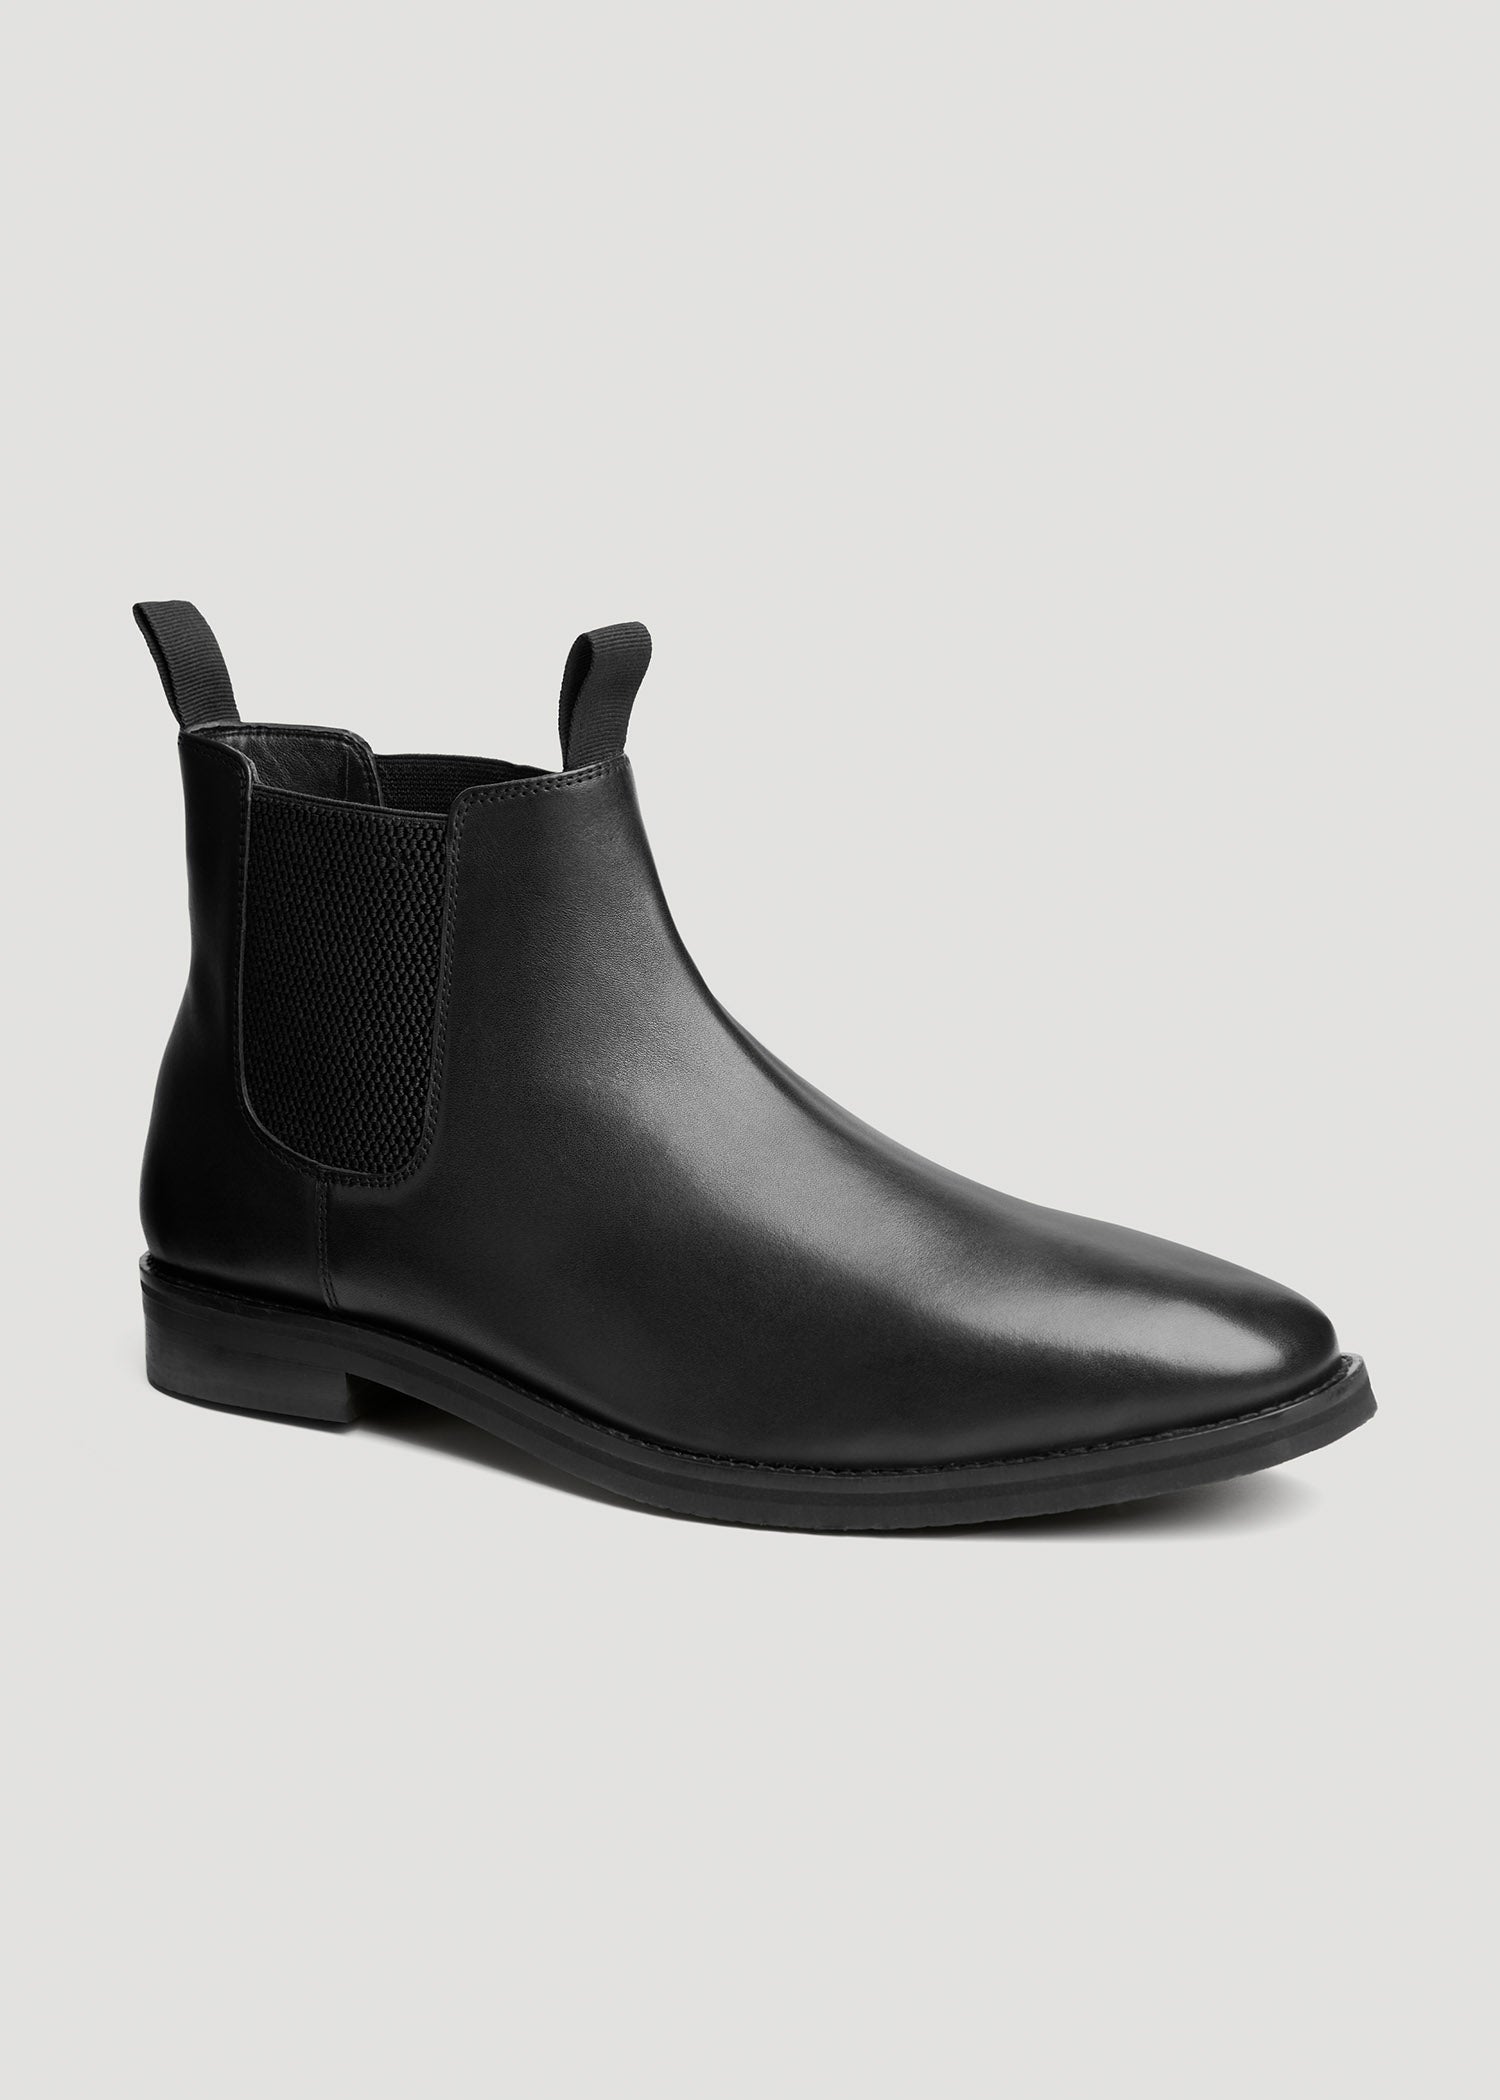 Æsel Sammenhængende Ruckus Size 13-15 Men's Leather Chelsea Boots Black | American Tall